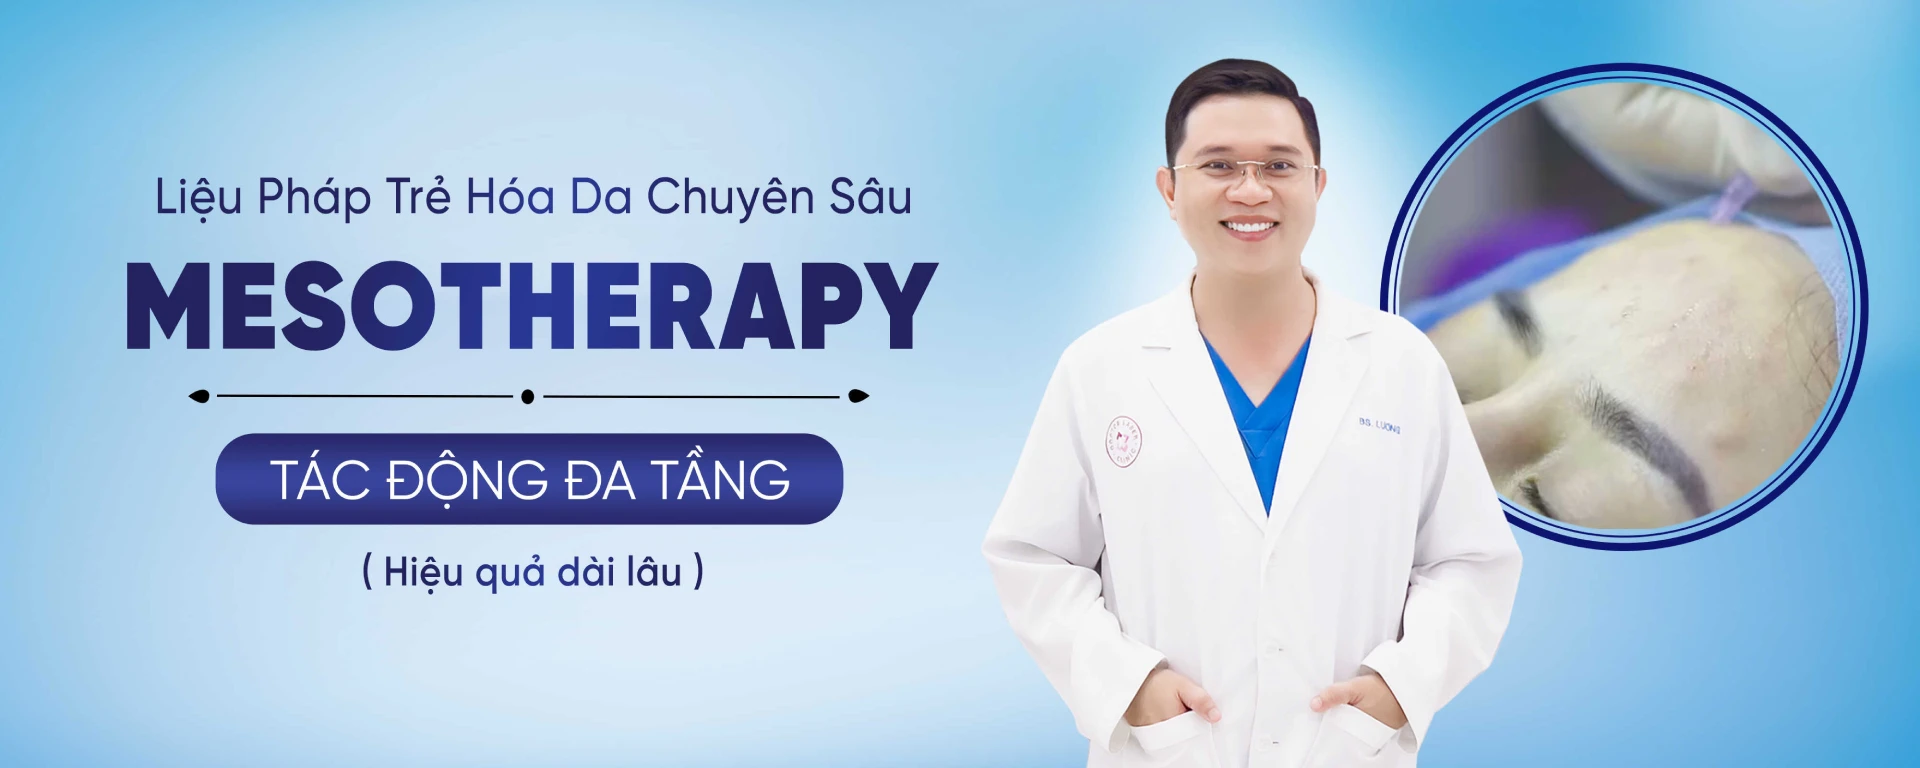 Mesotherapy Bác Sĩ Lương